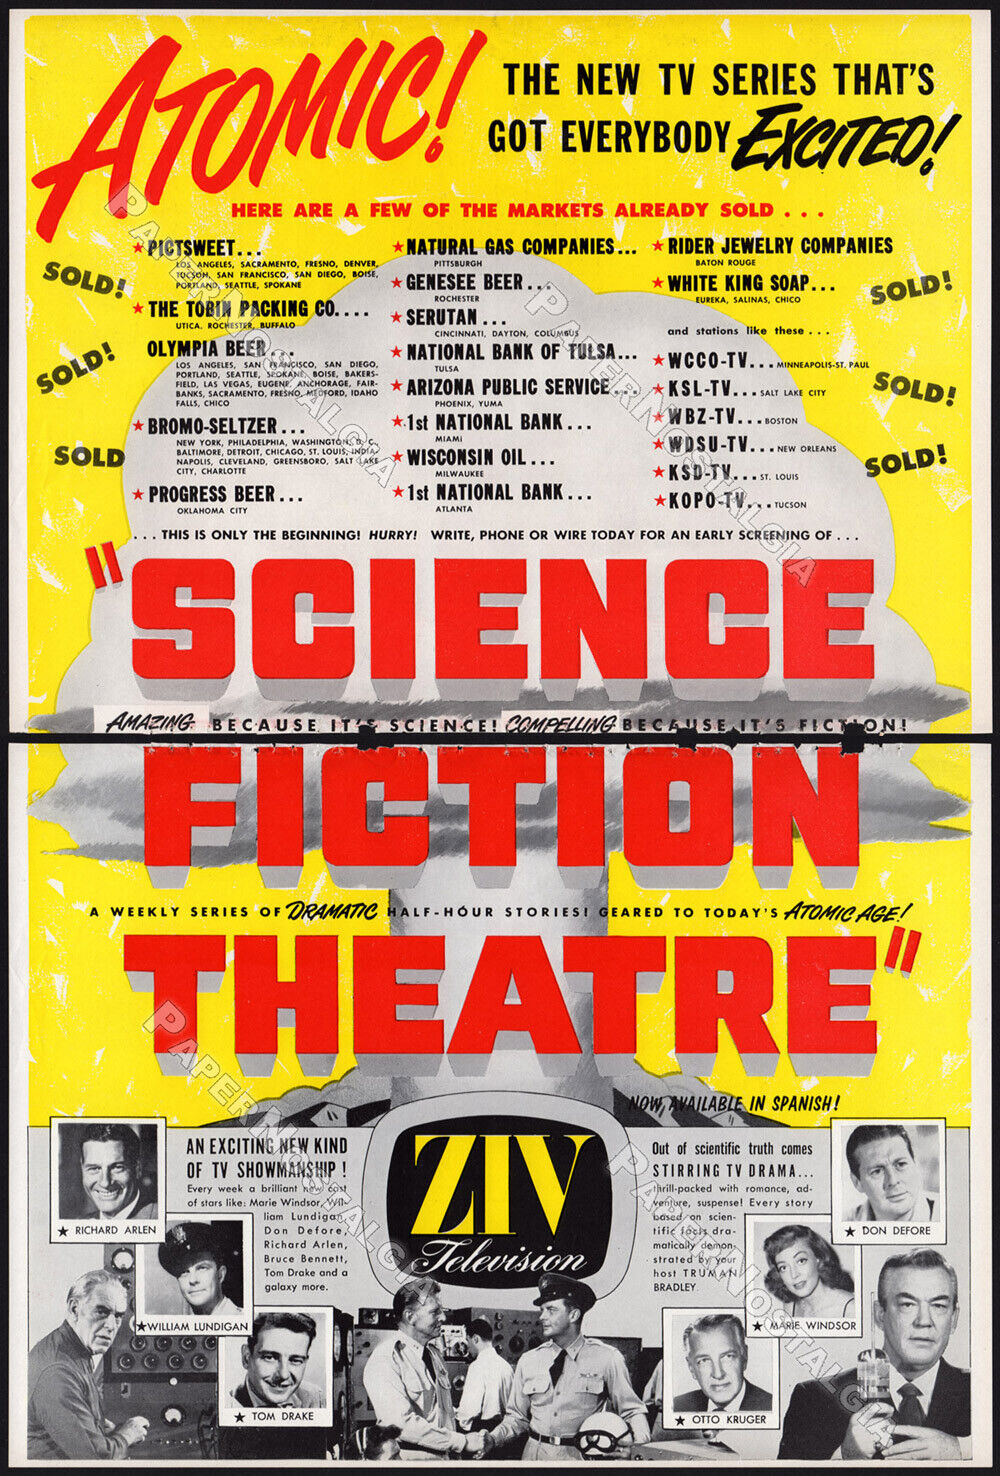 SCIENCE FICTION THEATRE__Orig. 1955 Trade AD / TV sci-fi promo__Truman Bradley